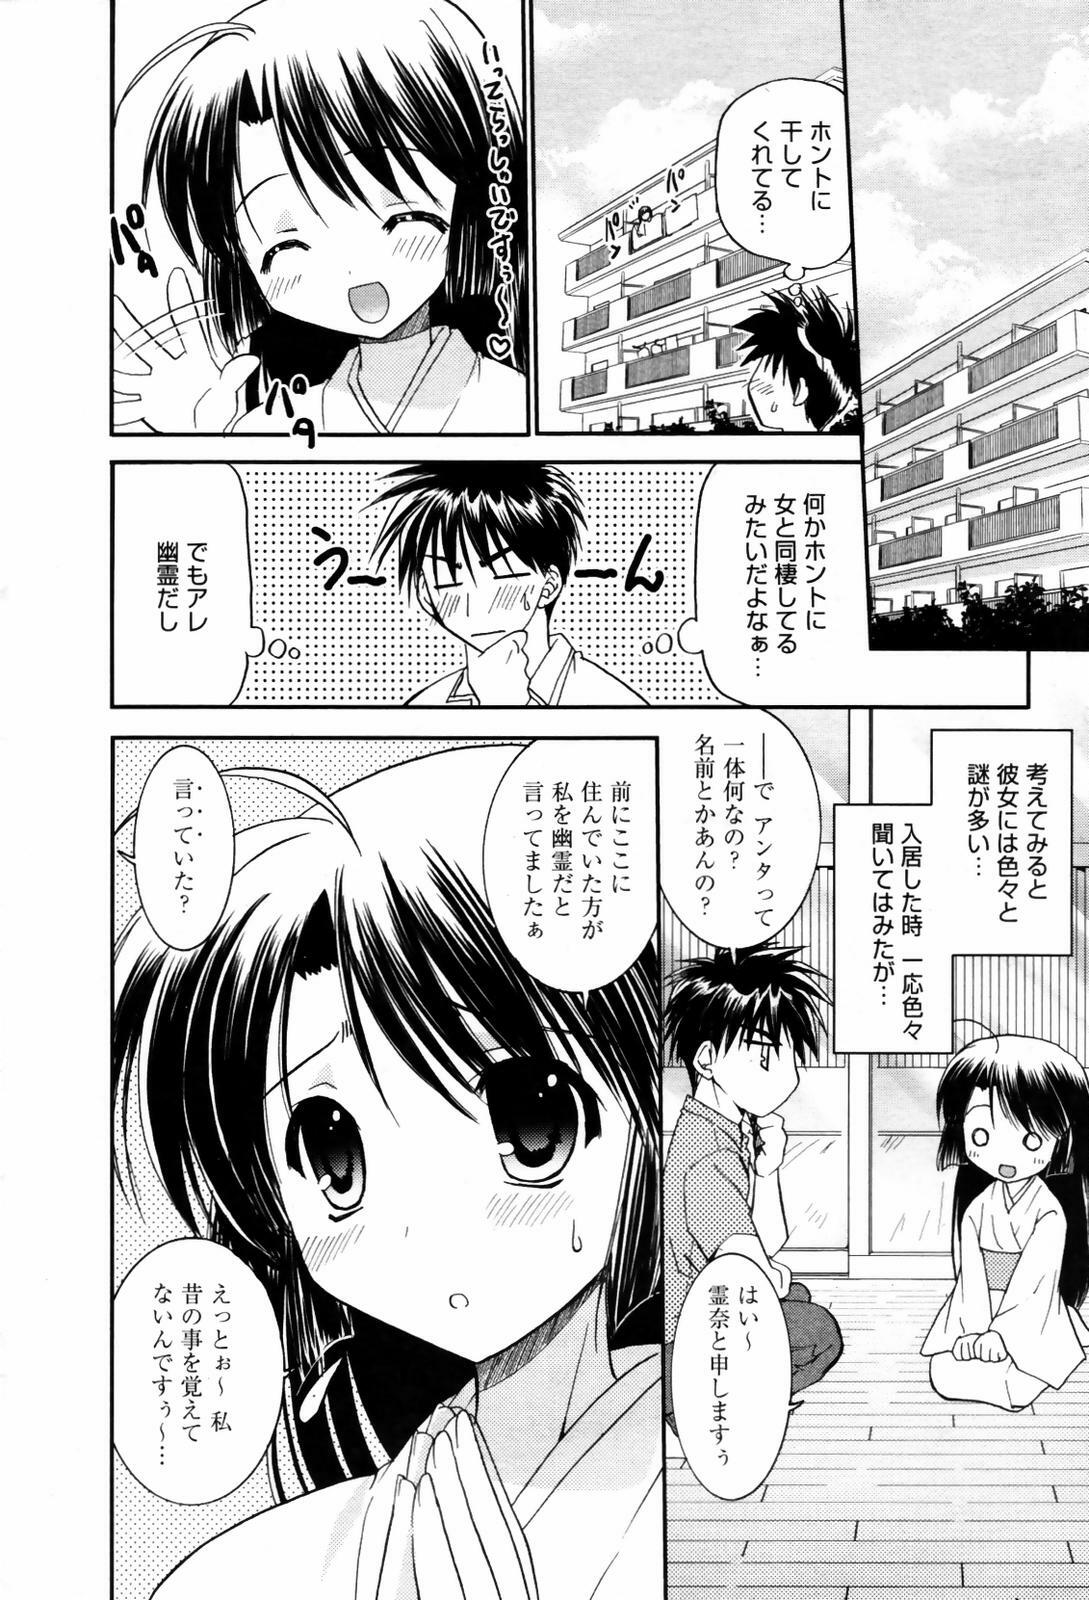 Manga Bangaichi 2007-09 page 26 full